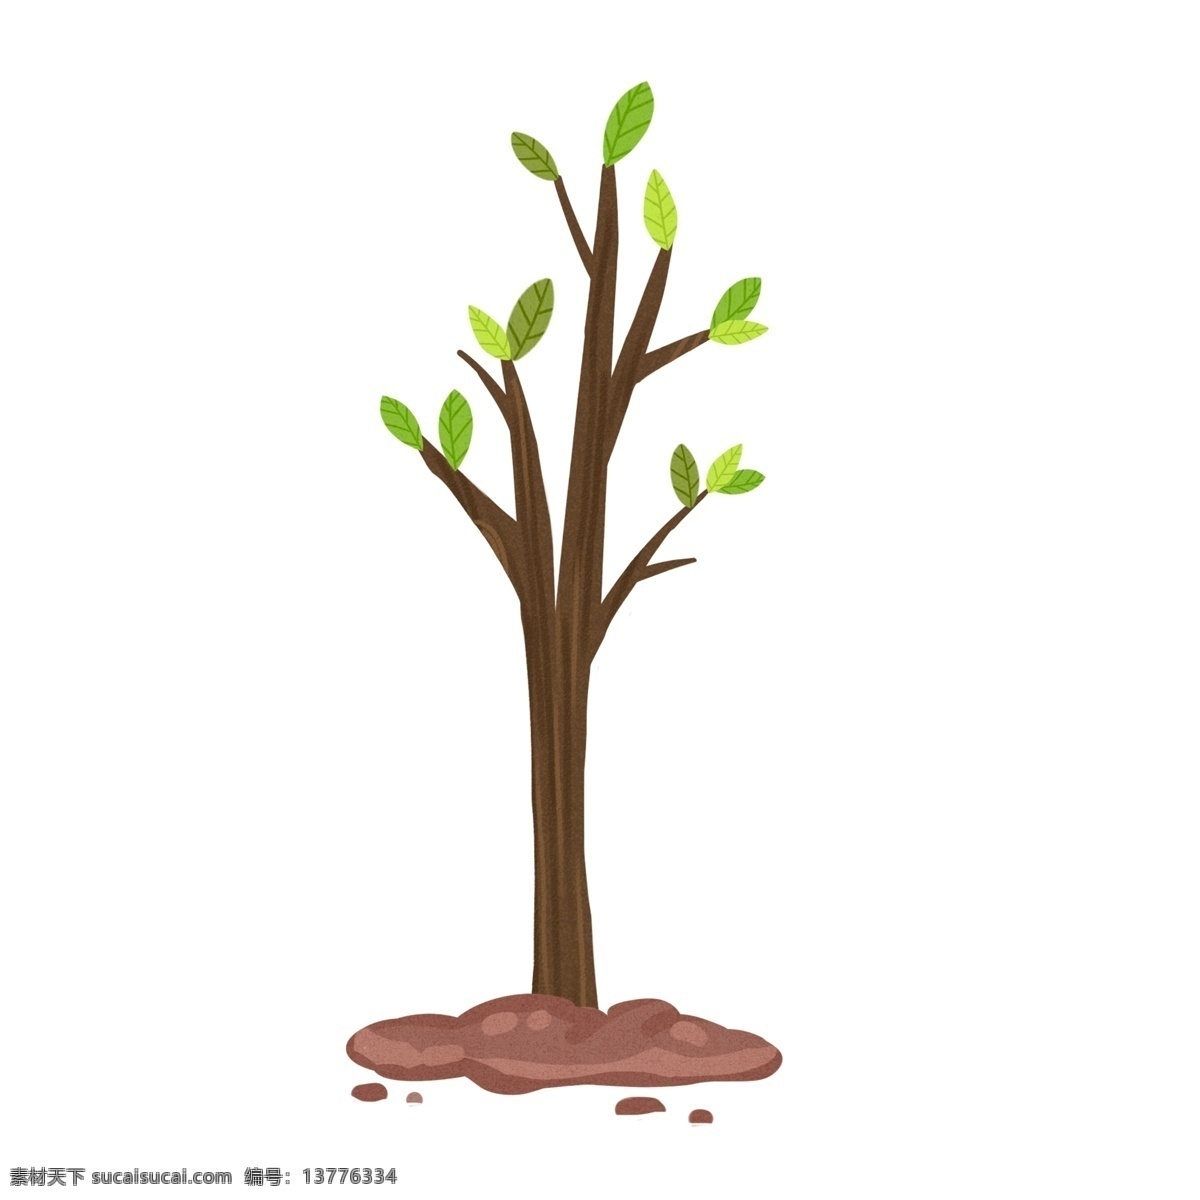 绿色 小 树苗 卡通 手绘 植物 树木 环保 爱护环境 插画 土壤 绿叶